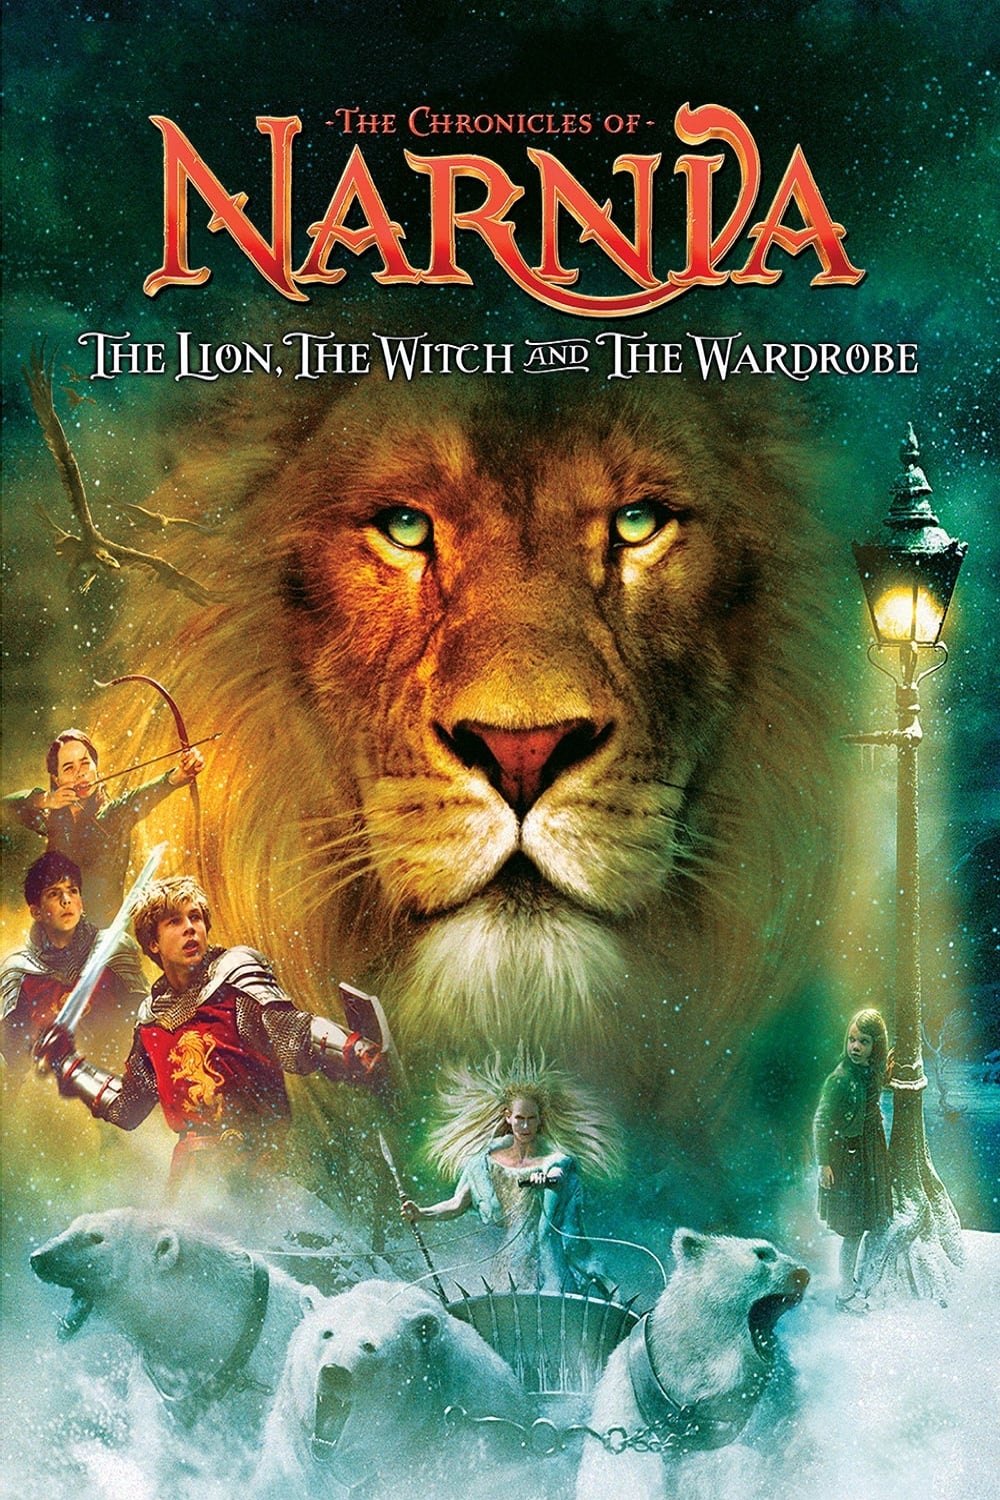 Biên Niên Sử Narnia: Sư Tử, Phù Thủy và Cái Tủ Áo (The Chronicles of Narnia: The Lion, the Witch and the Wardrobe) [2005]